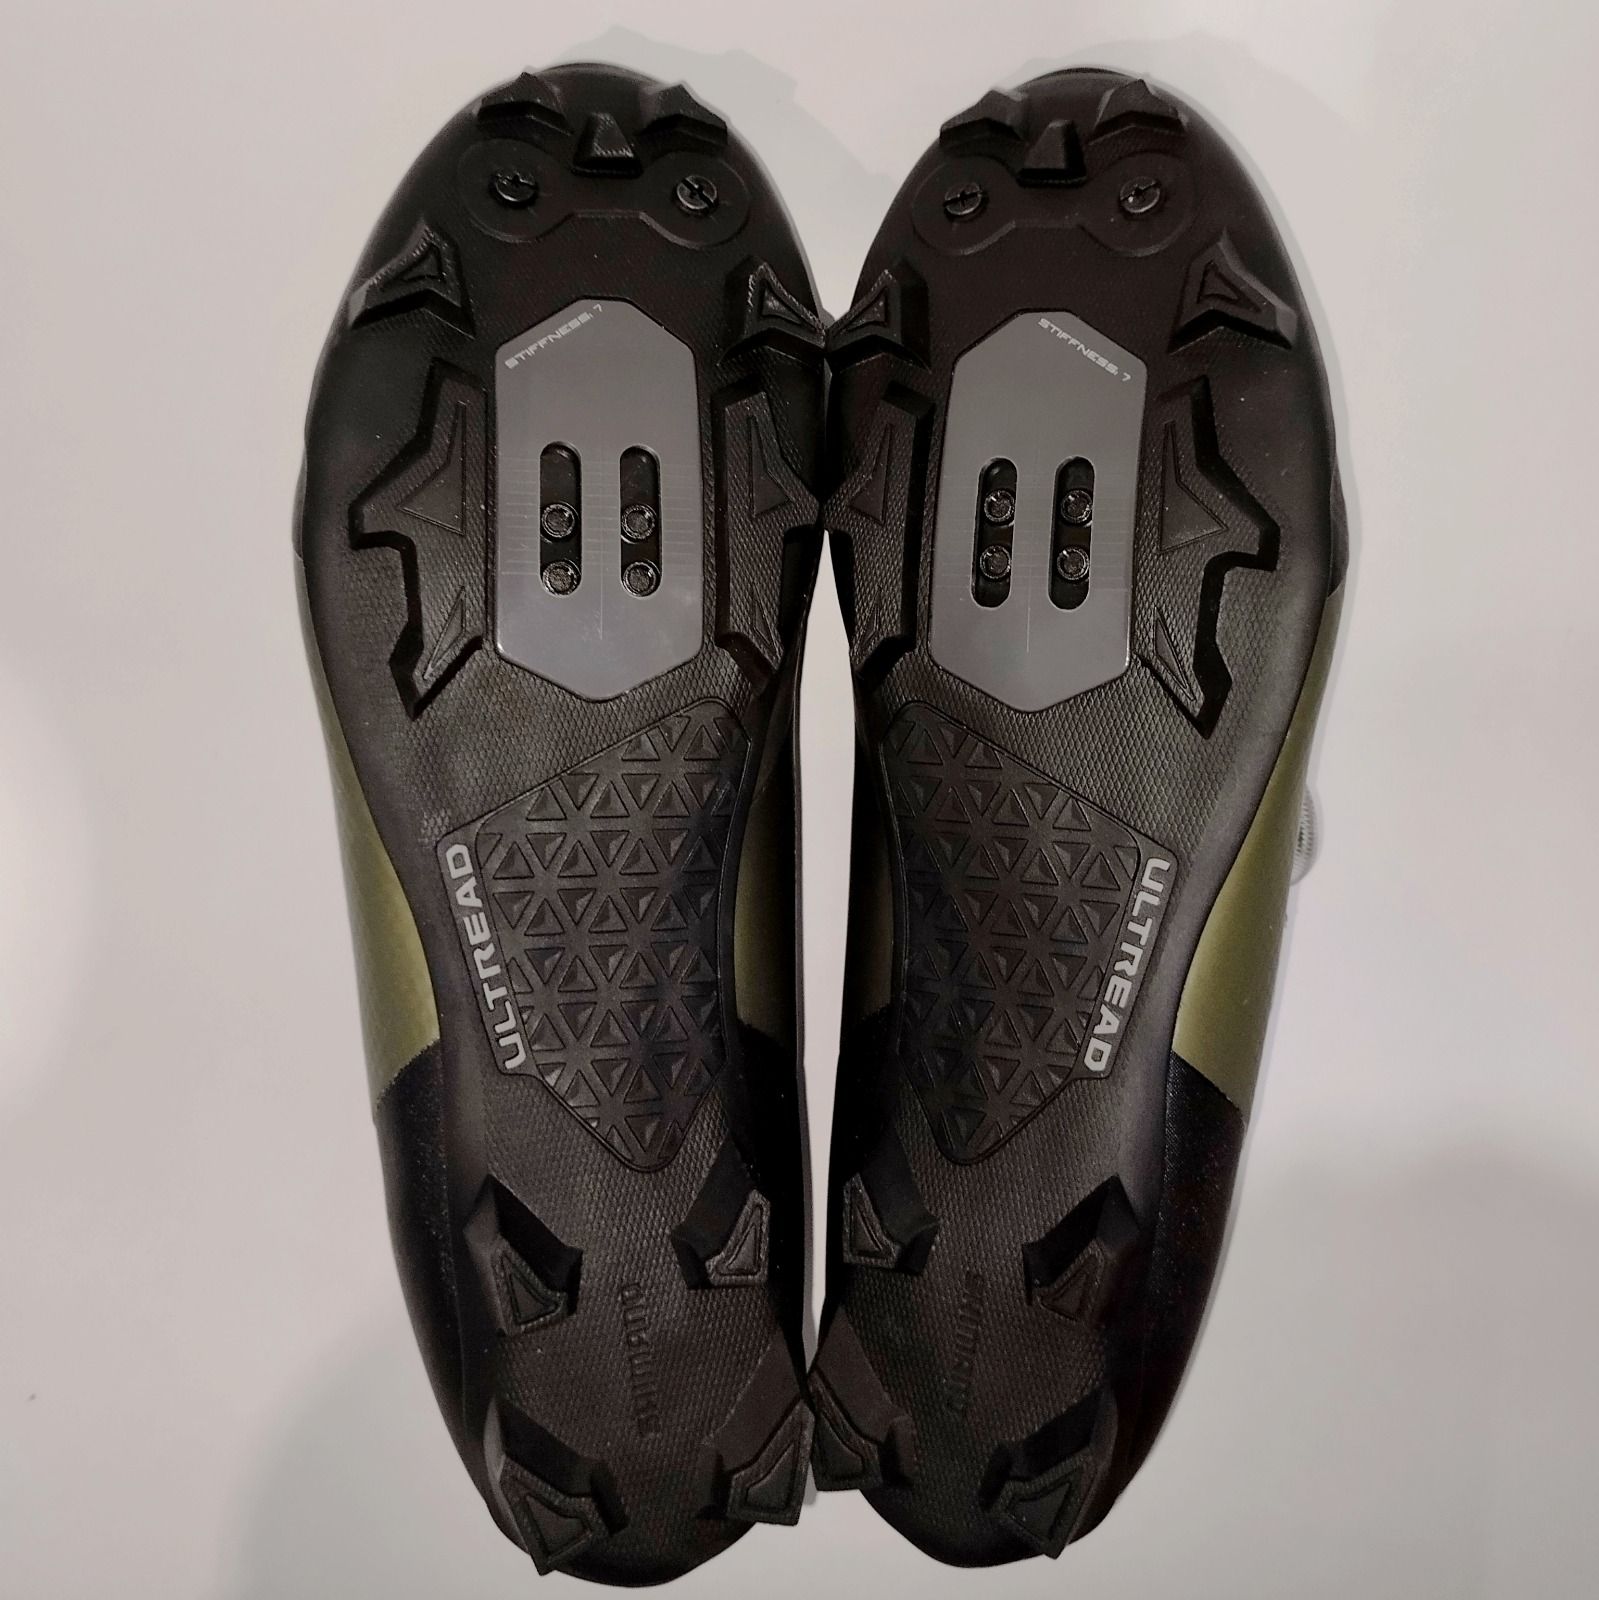 Новые МТБ туфли Shimano SH-XC502 (100$)